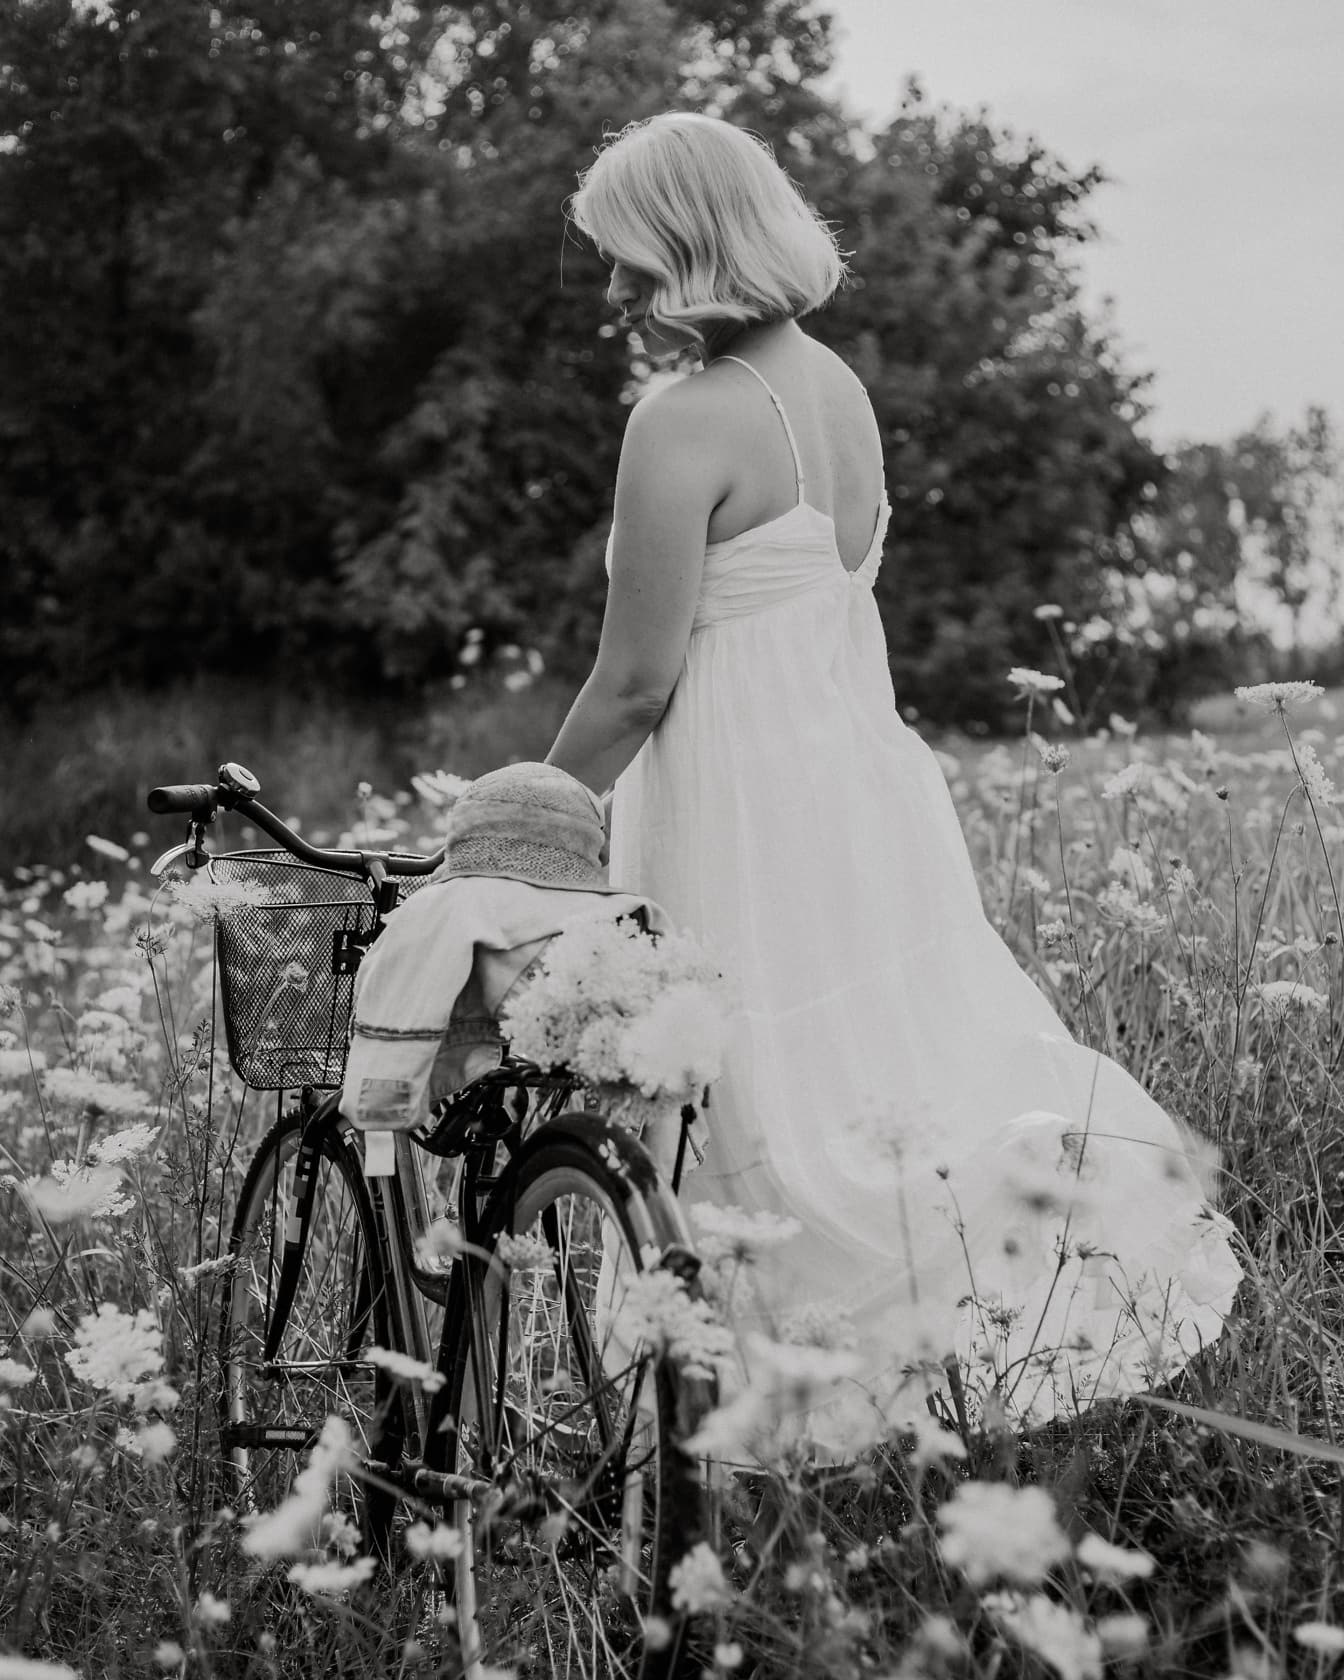 Pengantin negara dalam gaun rakyat putih tanpa punggung dengan sepeda di ladang bunga, foto hitam putih